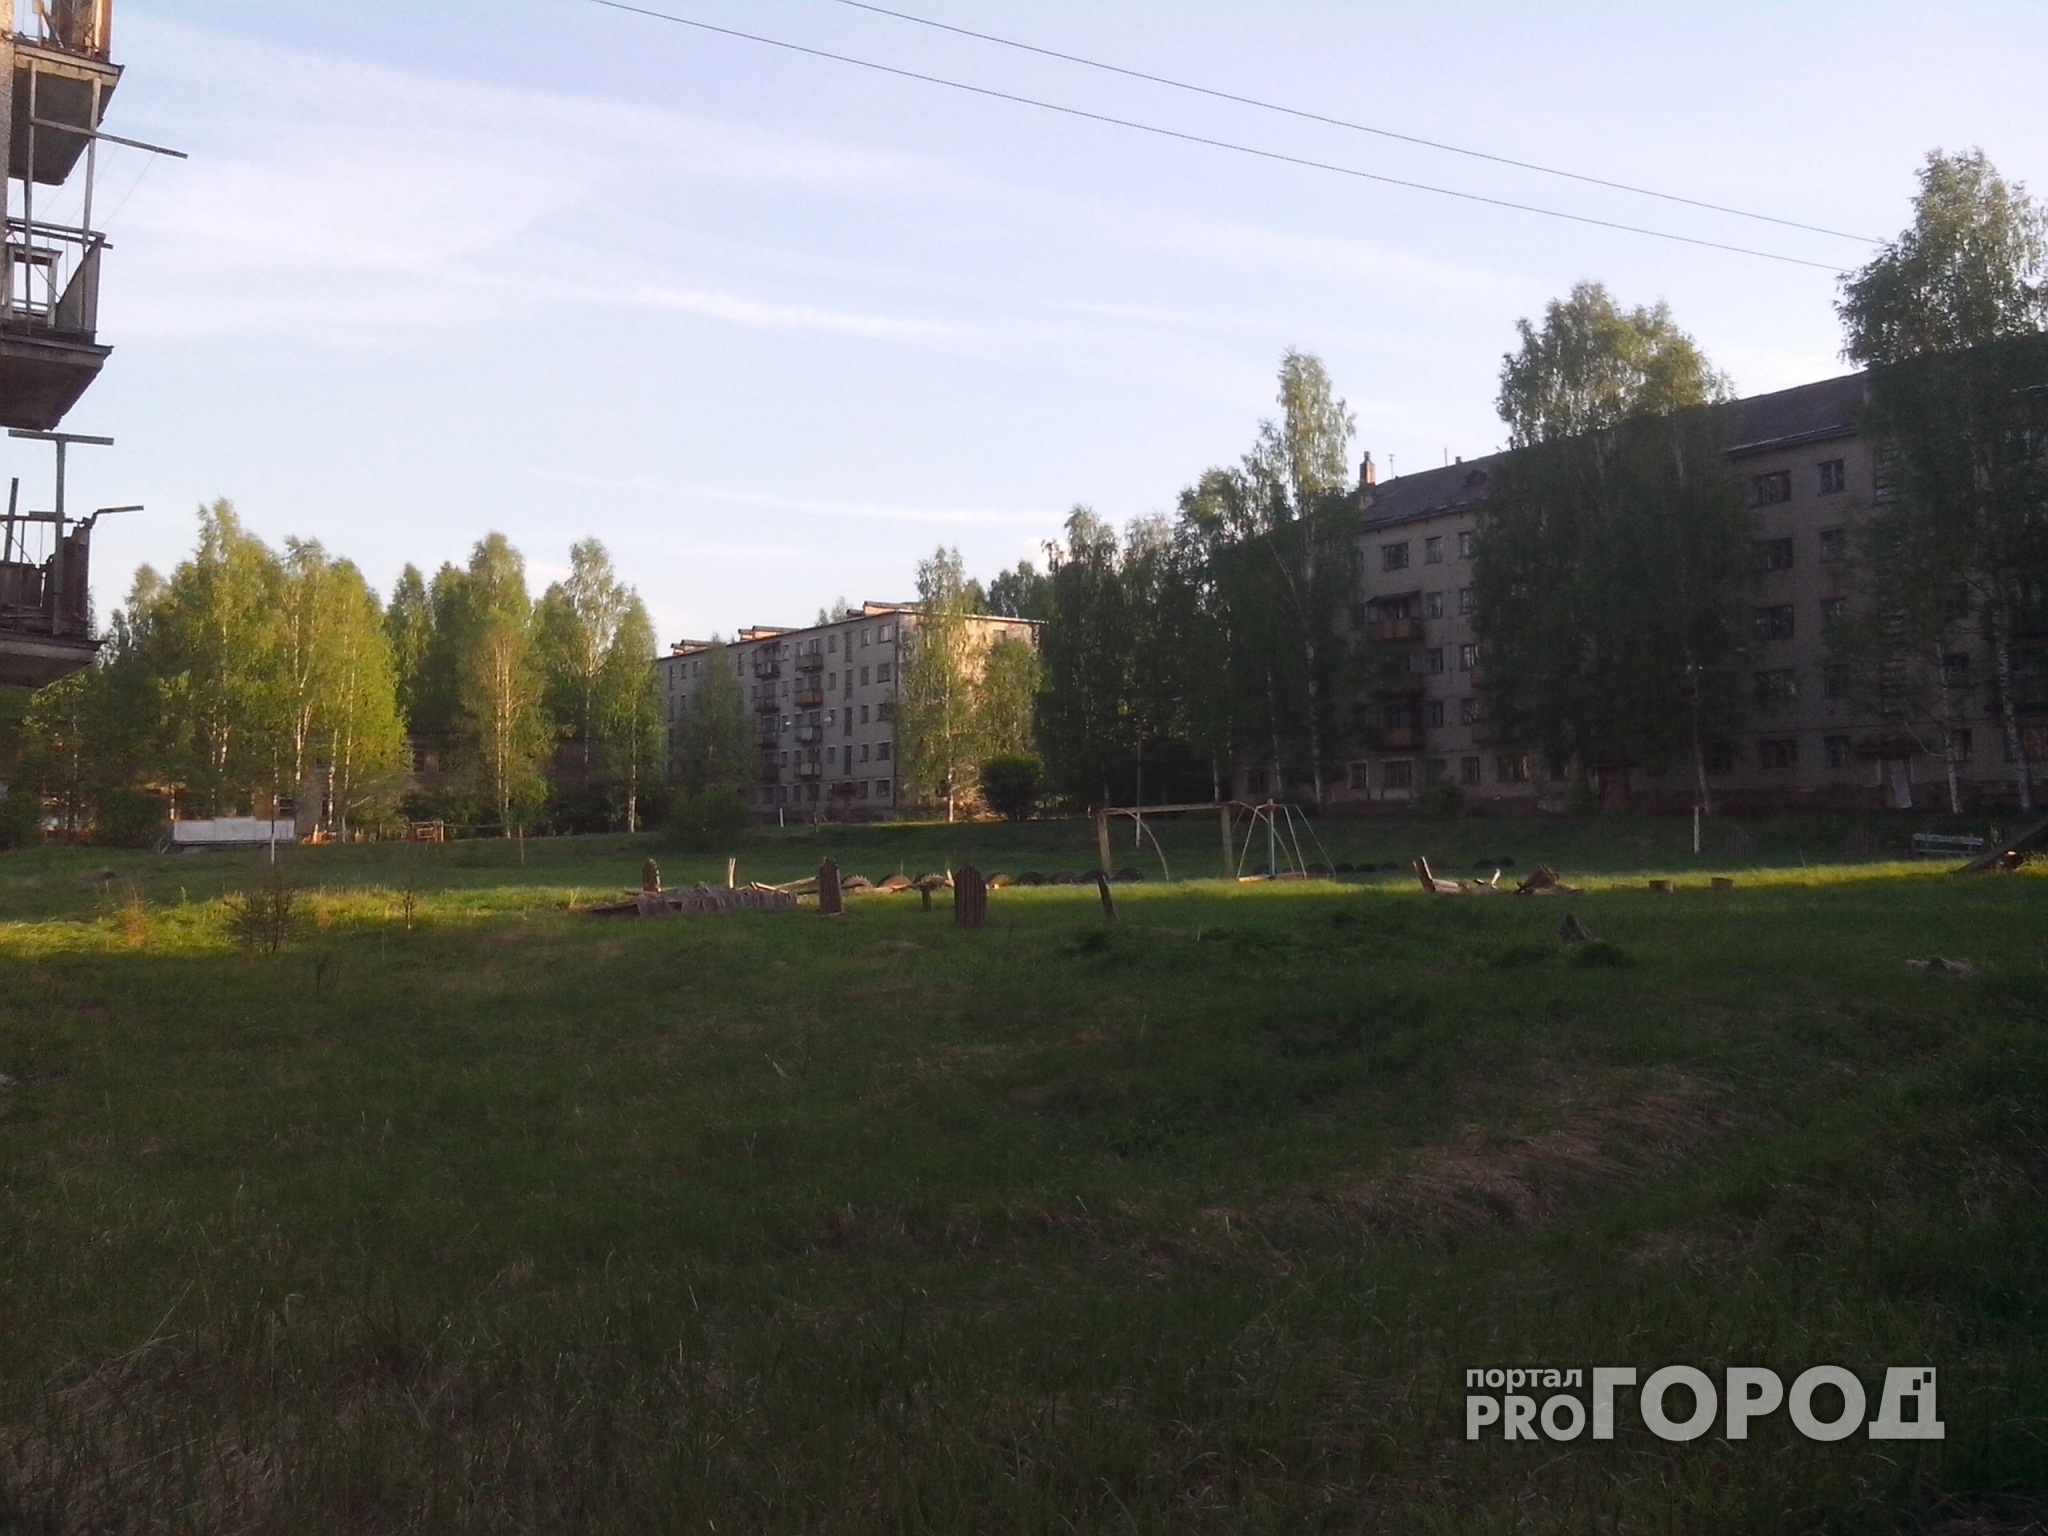 "Уходя, они многое взорвали": репортаж из заброшенного города в Кировской области